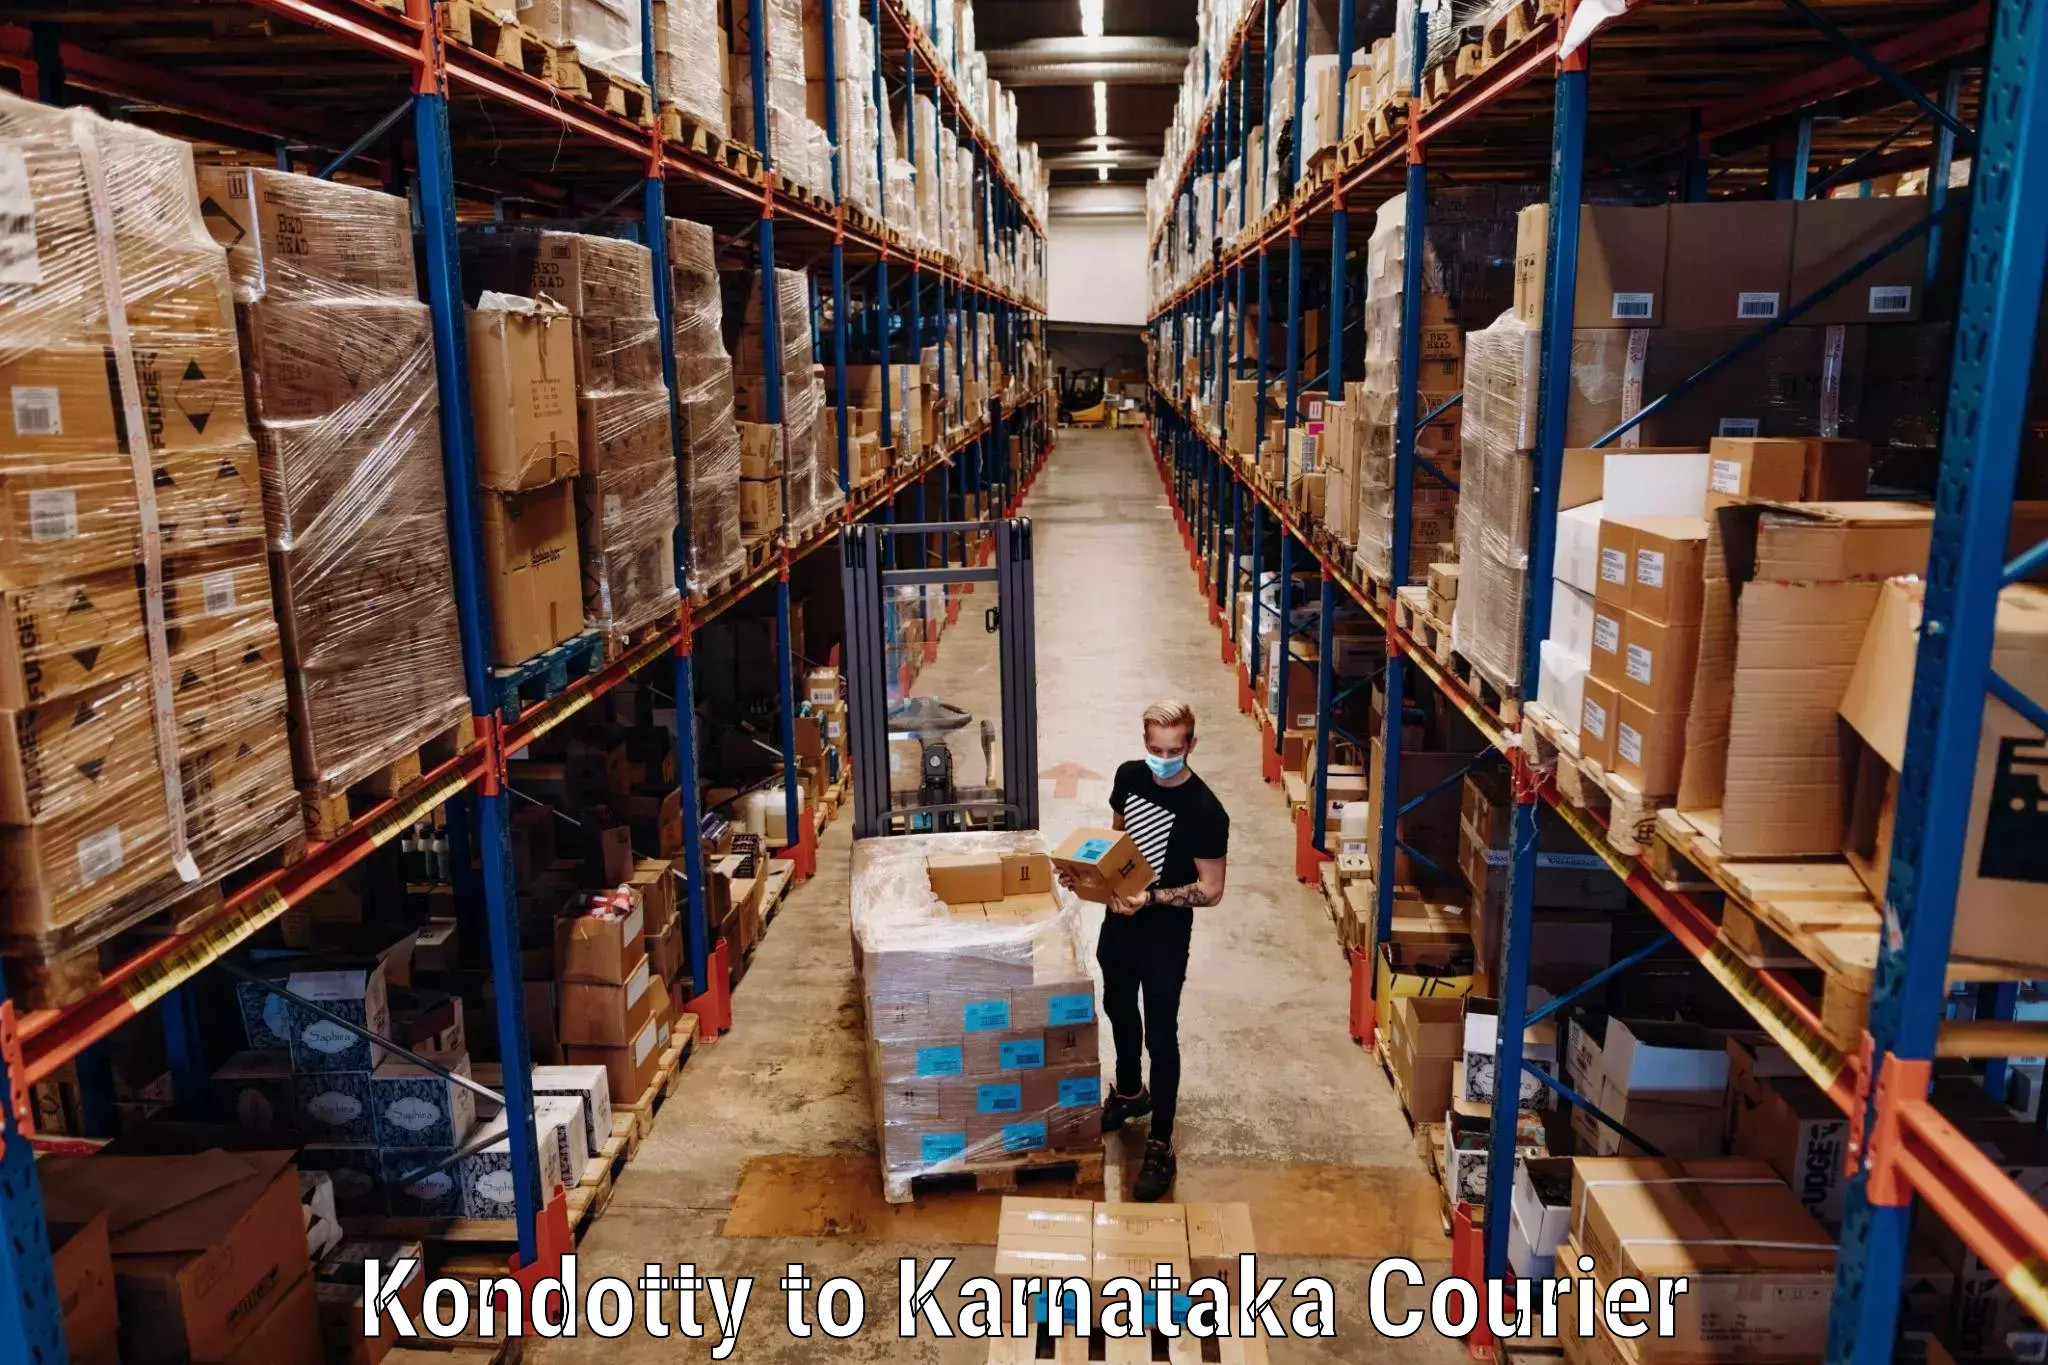 Luggage delivery system Kondotty to Yenepoya Mangalore